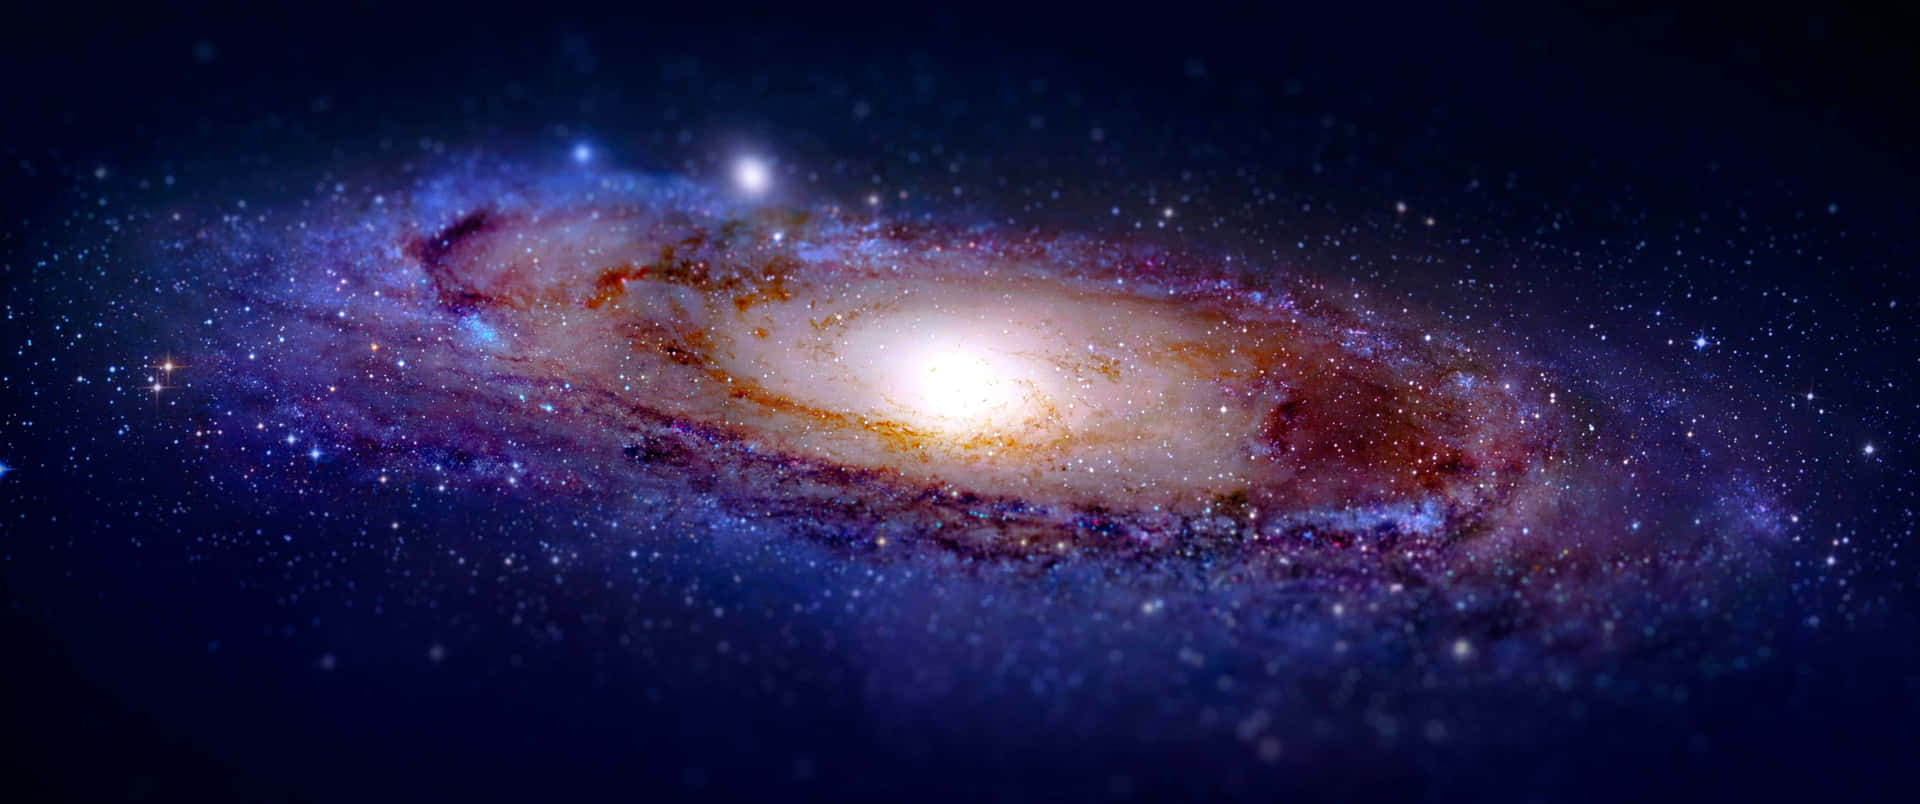 Vackertrymdtapet Med Andromedagalaxen I 3440x1440-upplösning. Wallpaper